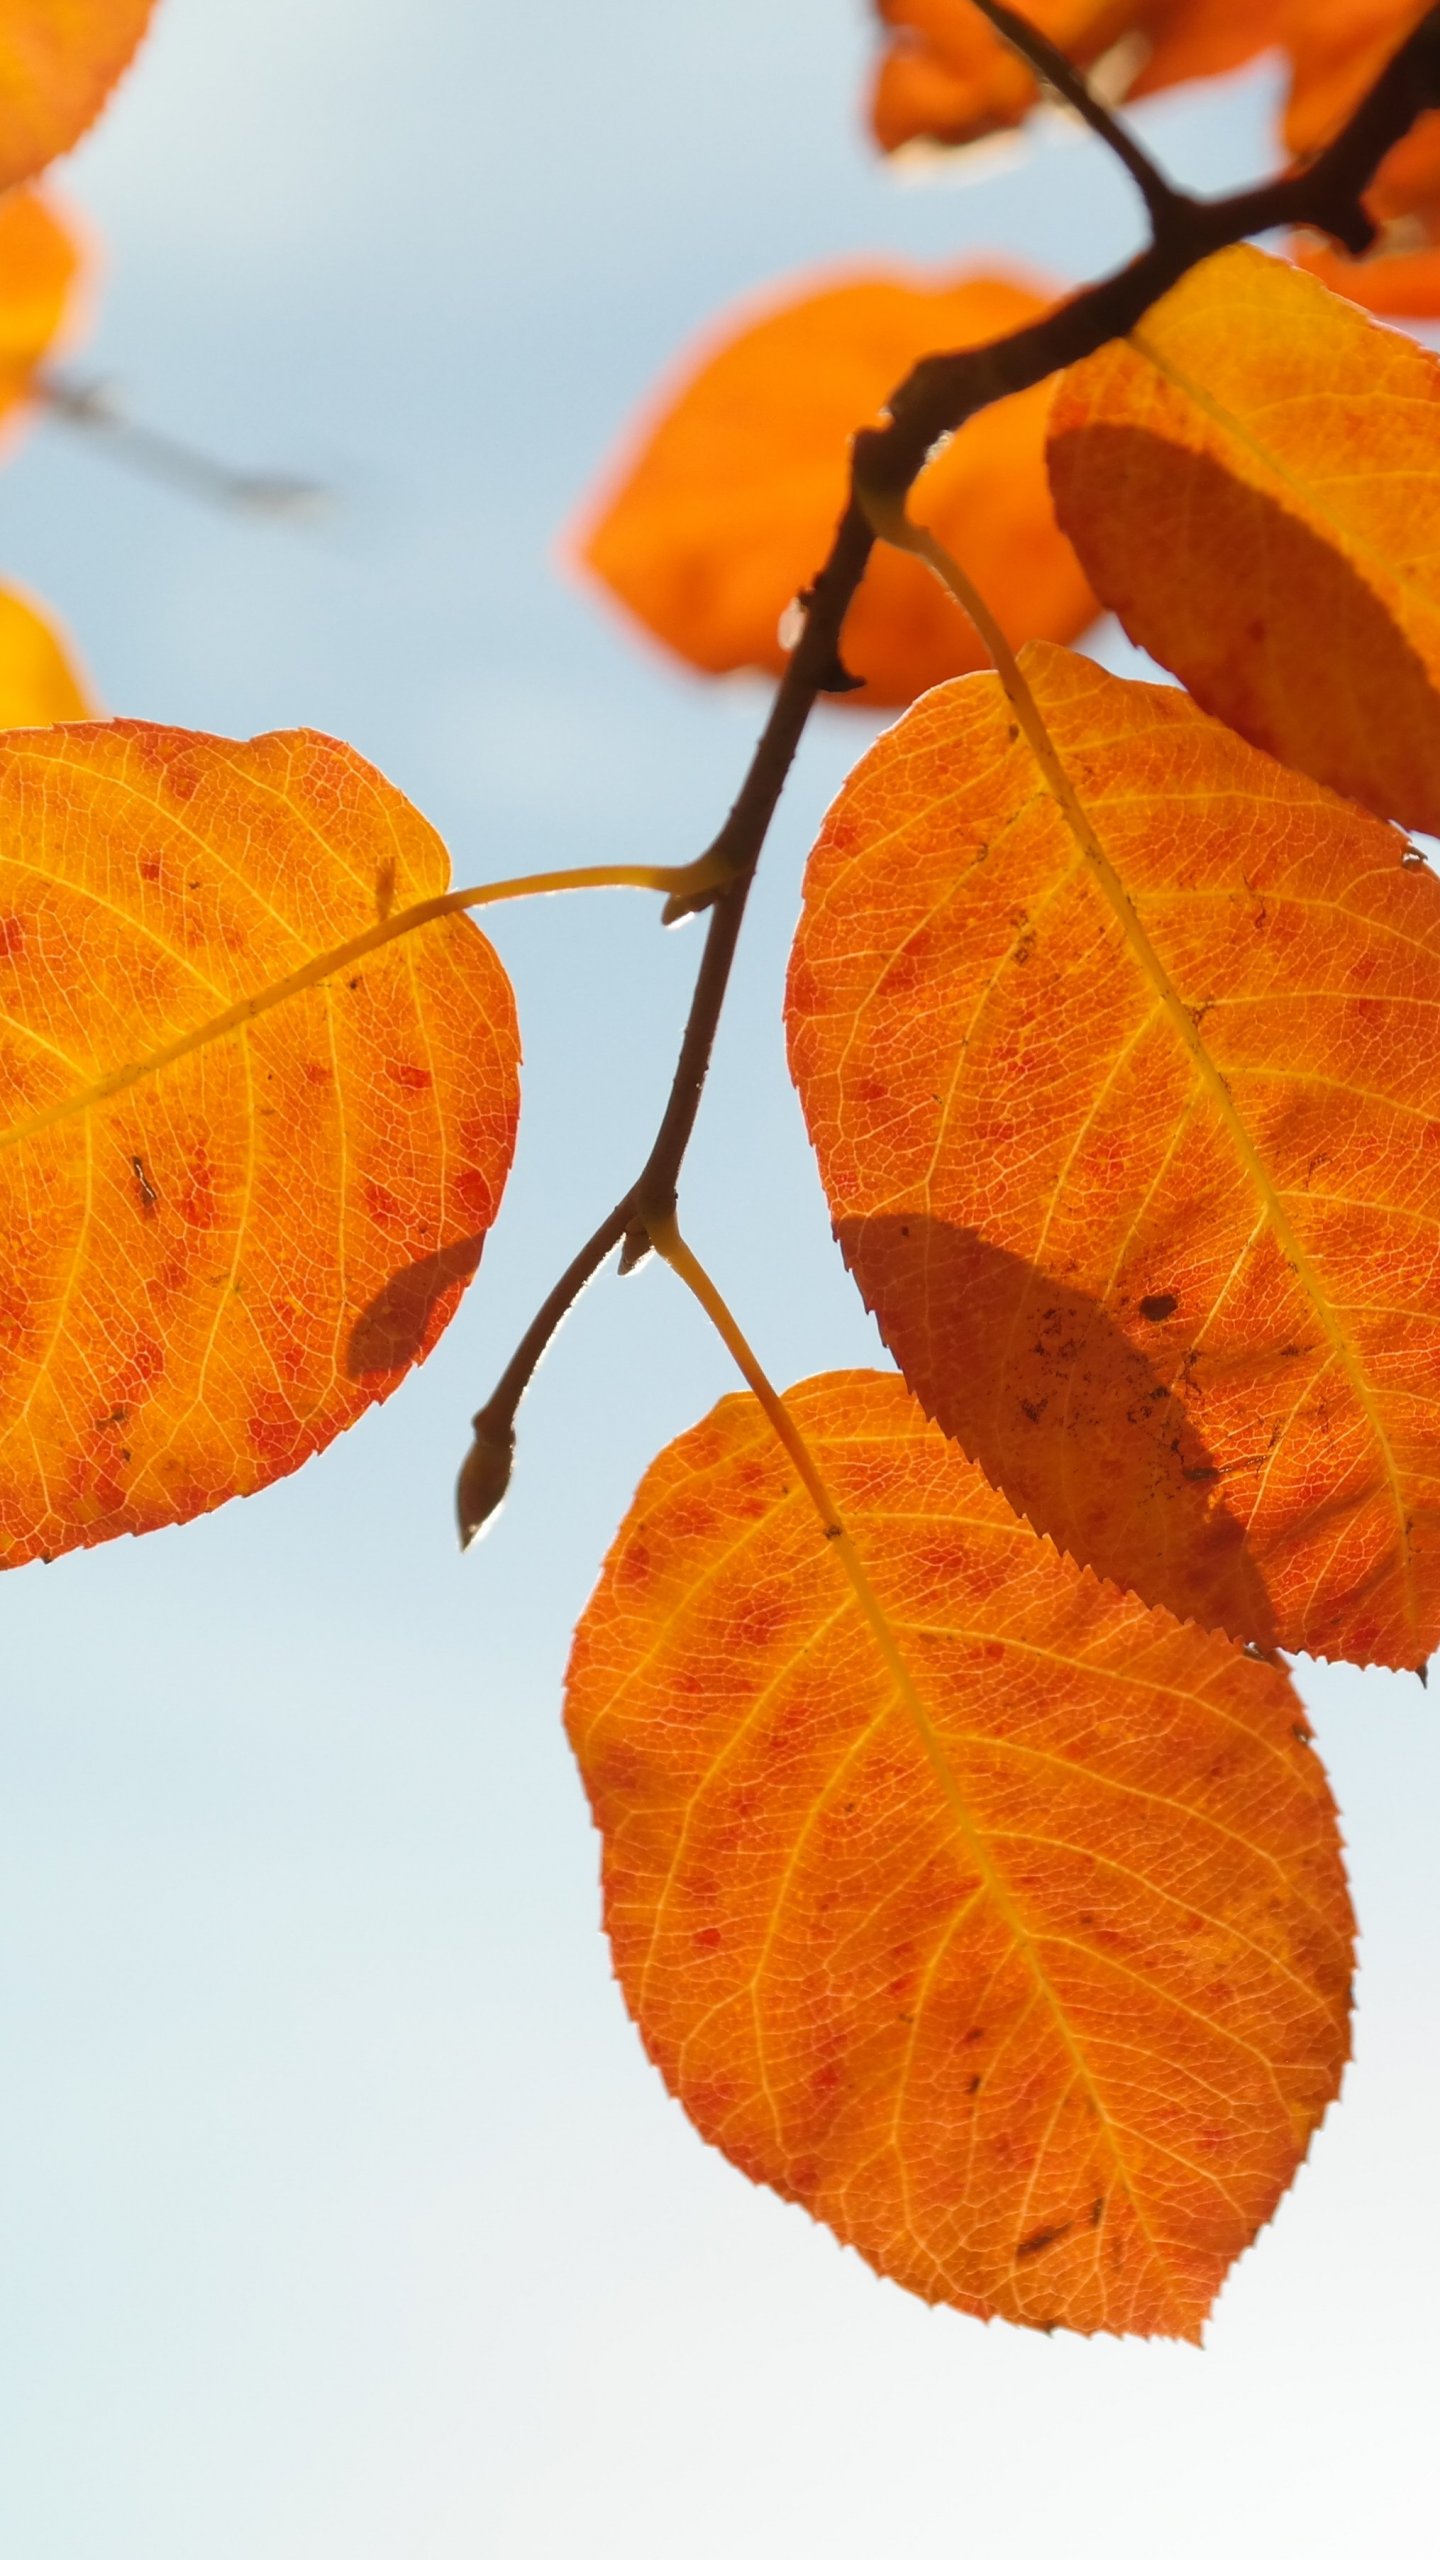 Với những màu sắc vàng cam rực rỡ, các chiếc lá mùa thu tạo ra một khung cảnh đẹp như tranh vẽ. Hãy xem tiếp hình ảnh về lá mùa thu này để cảm nhận sự hoàn hảo của mùa thu.